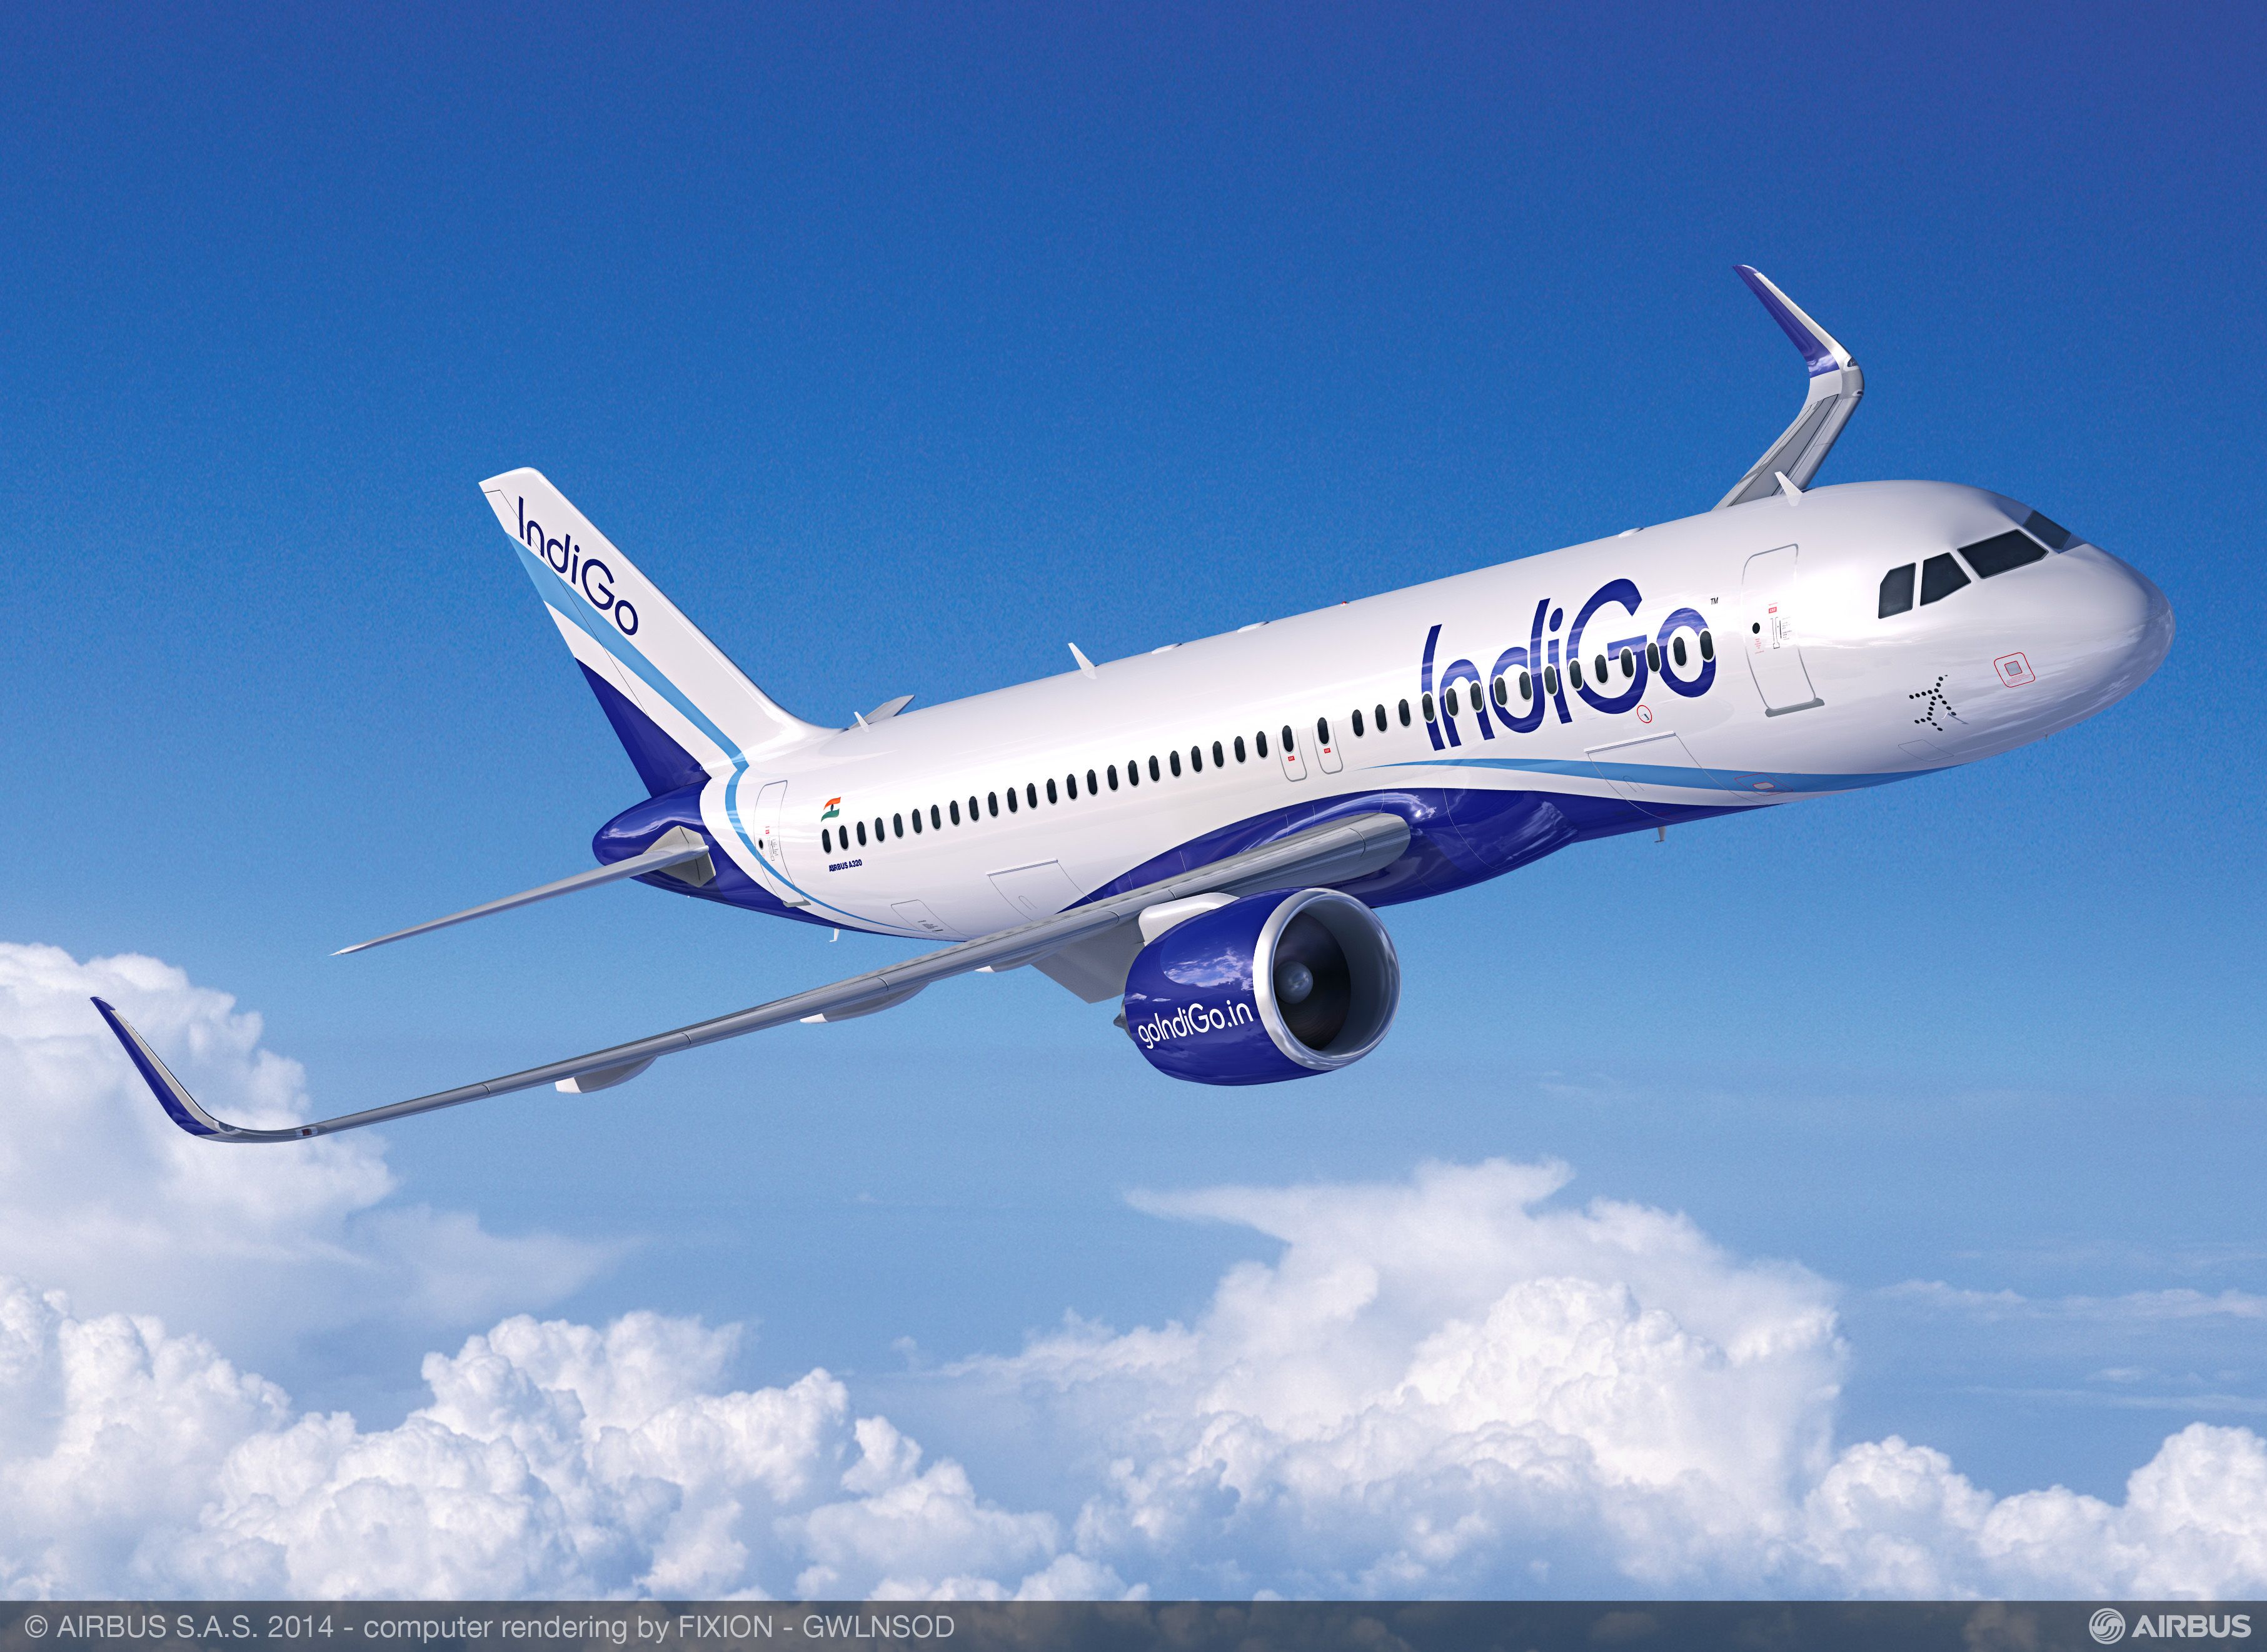 Après Air India, Airbus pourrait signer un nouveau contrat géant avec IndiGo